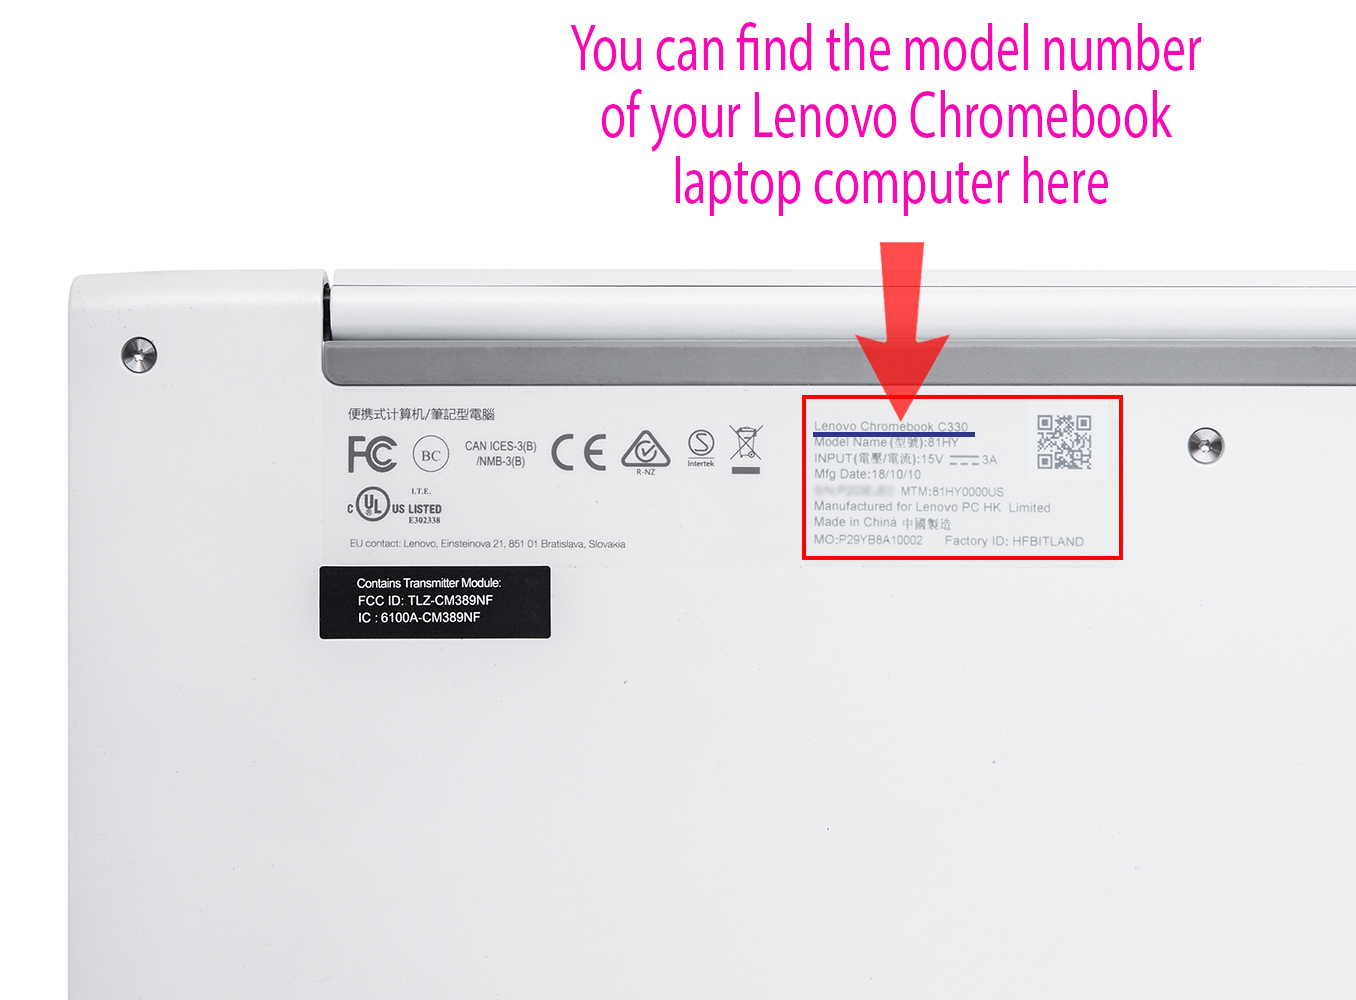 mCover Hard Shell case for Lenovo C330 series Chromebook laptop